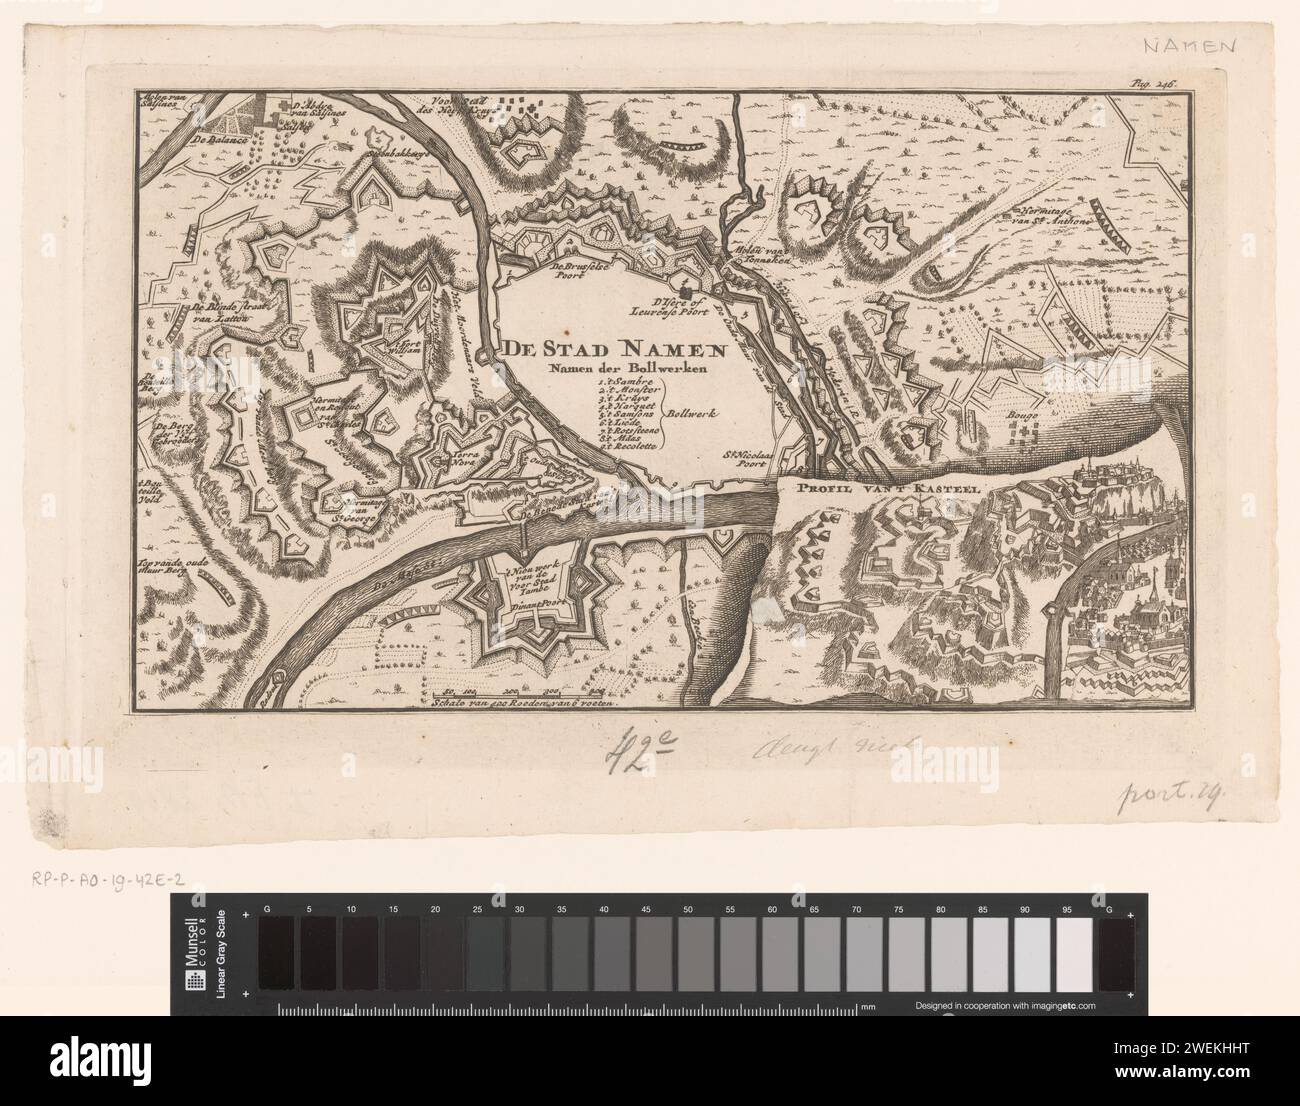 Festungskarte von Namur und ein Profil der Burg Namur, Anonym, 1735 gedruckte Karte der Namen mit einem Profil der Burg Namur unten rechts. Unten, links von der Mitte, eine Schüssel mit 400 Stäben von 6 Fuß. In der Mitte eine Legende 1-9. Bild oben rechts: S. 246. Papiergravur von Stadtplänen. Befestigte Stadtnamen (Stadt). Schloss Namur Stockfoto